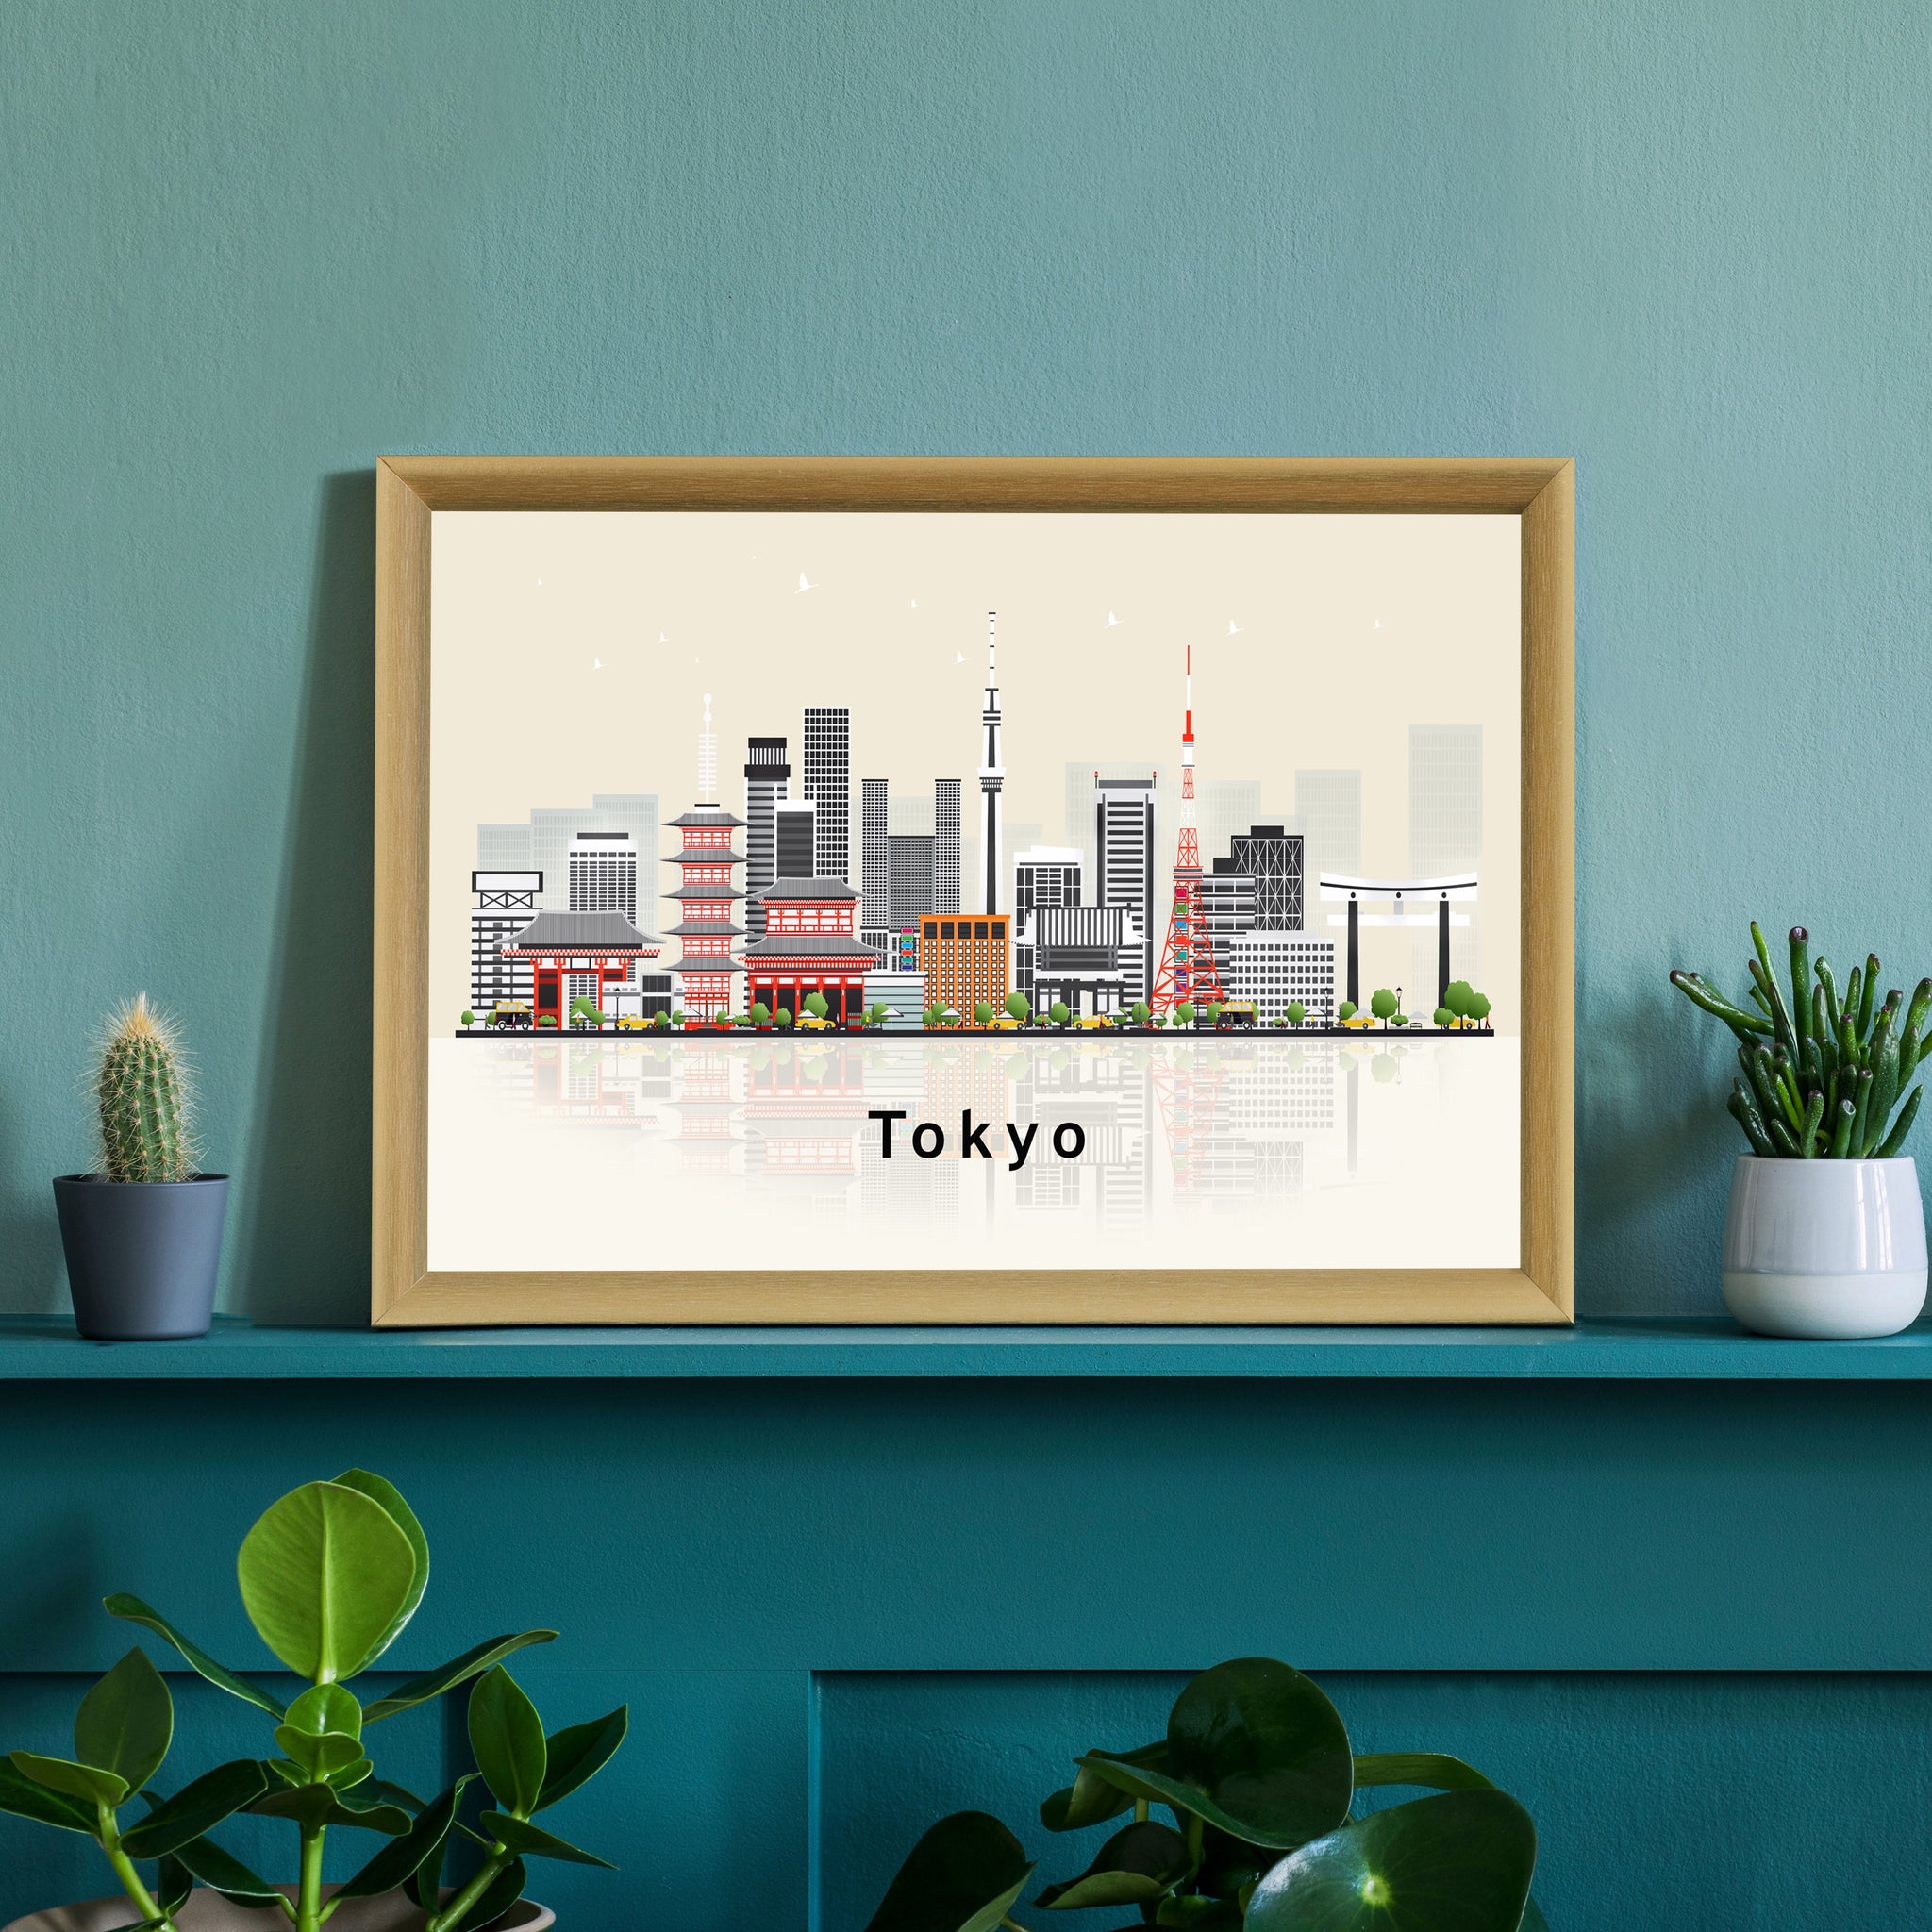 TOKYO JAPAN Illustration skyline poster, Modern skyline cityscape poster, Tokyo Japan city skyline landmark map poster, Home wall art